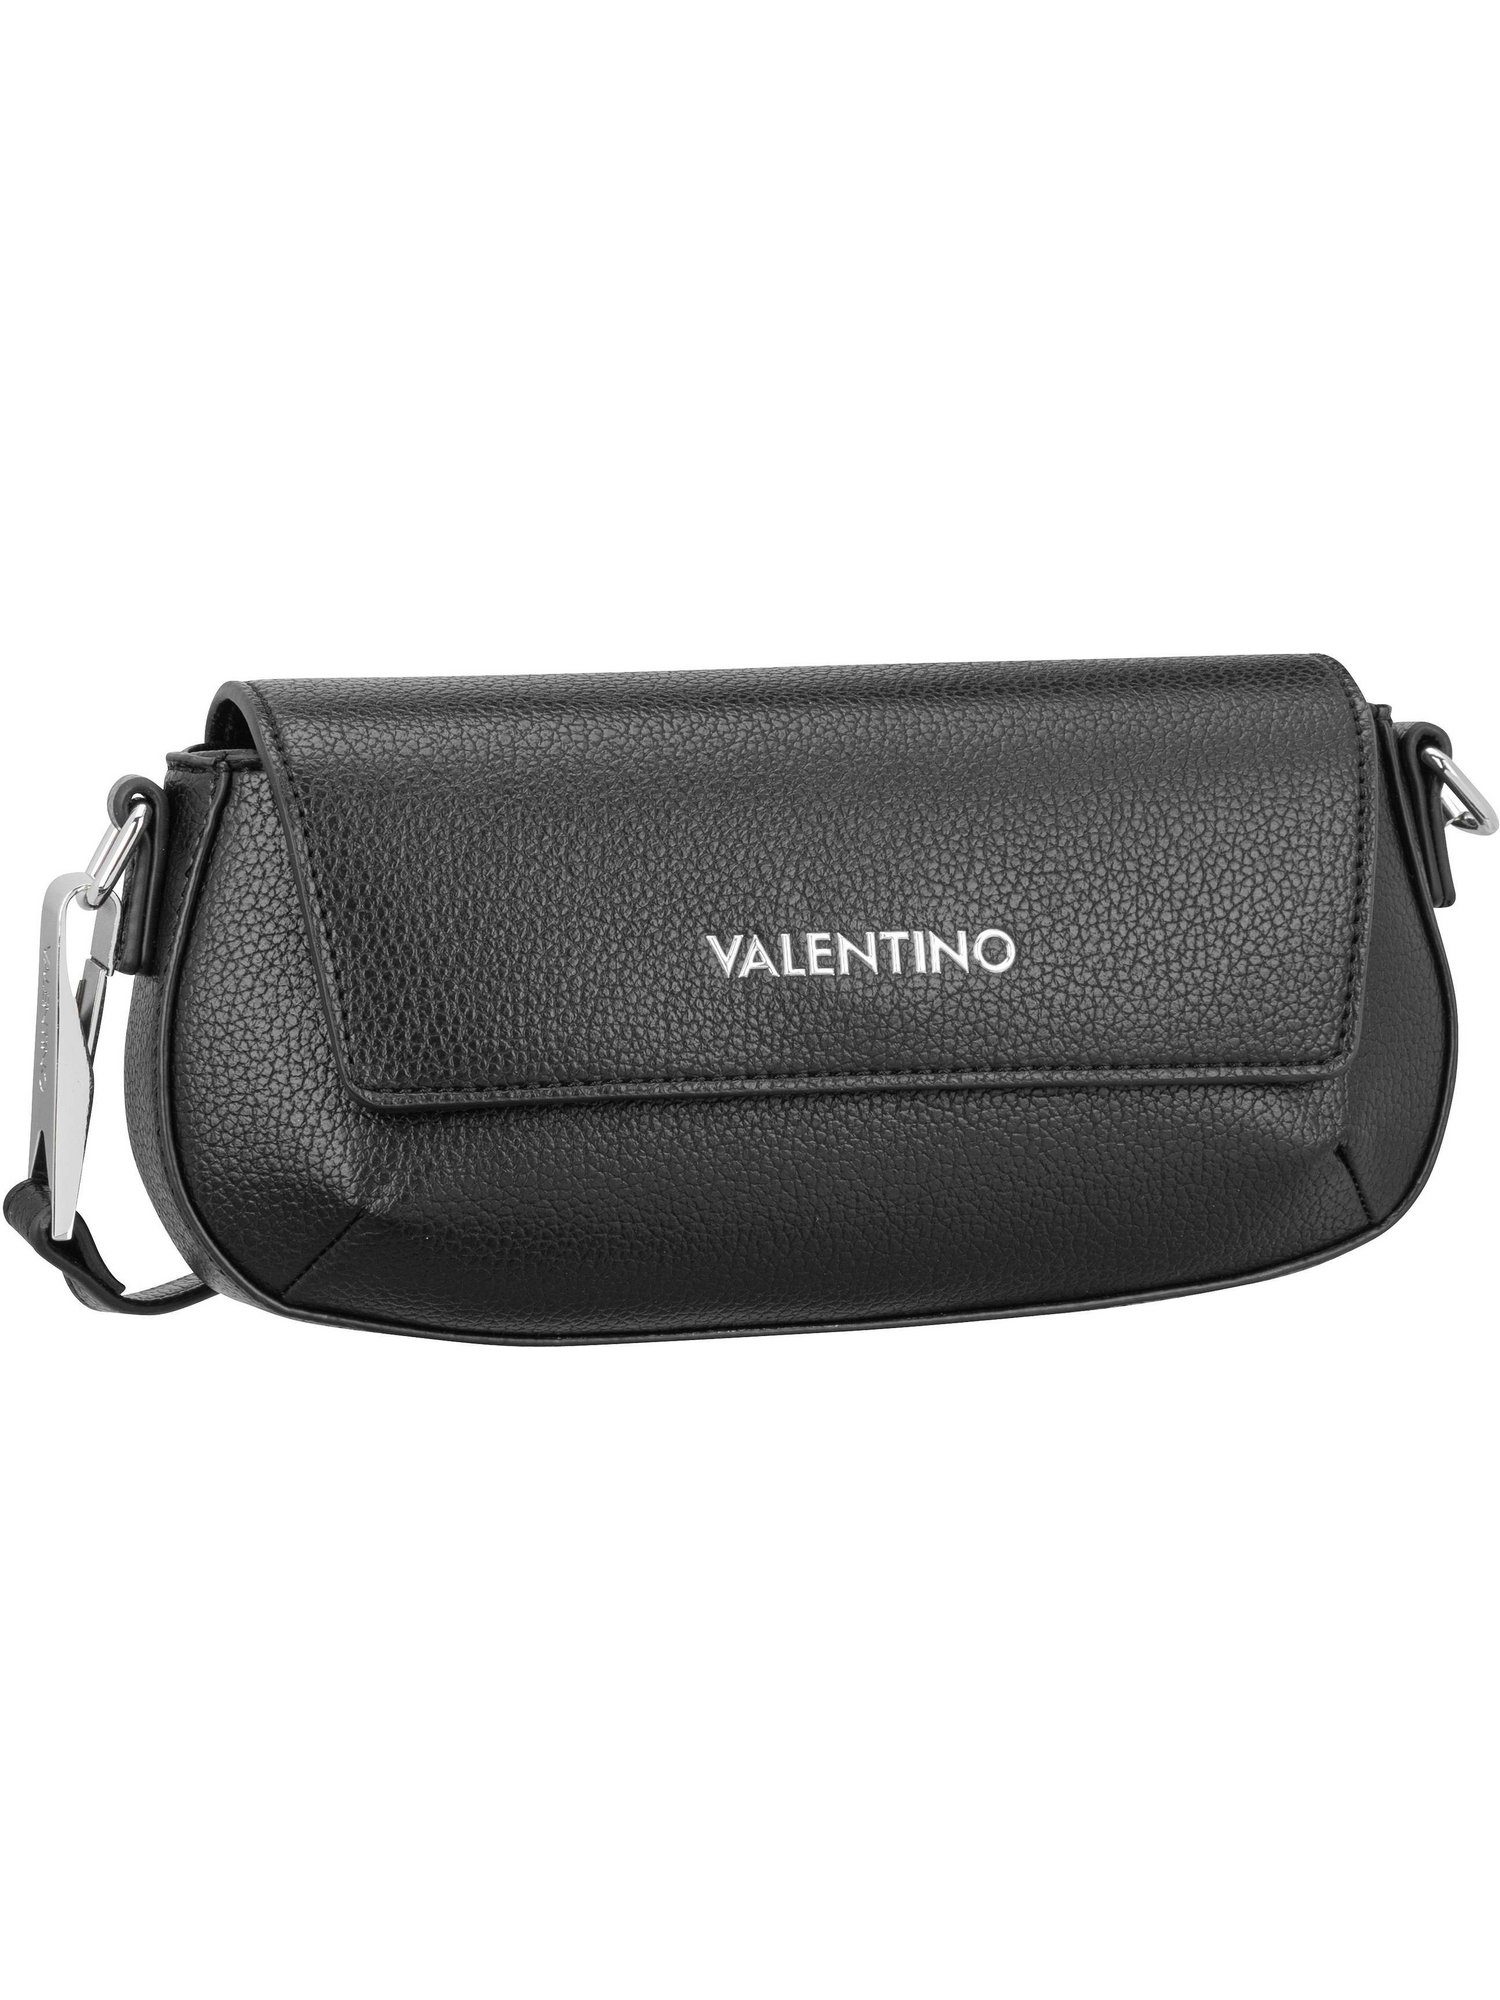 D01, Bag Bag Umhängetasche Crossbody VALENTINO RE Nero Flap BAGS Conscious